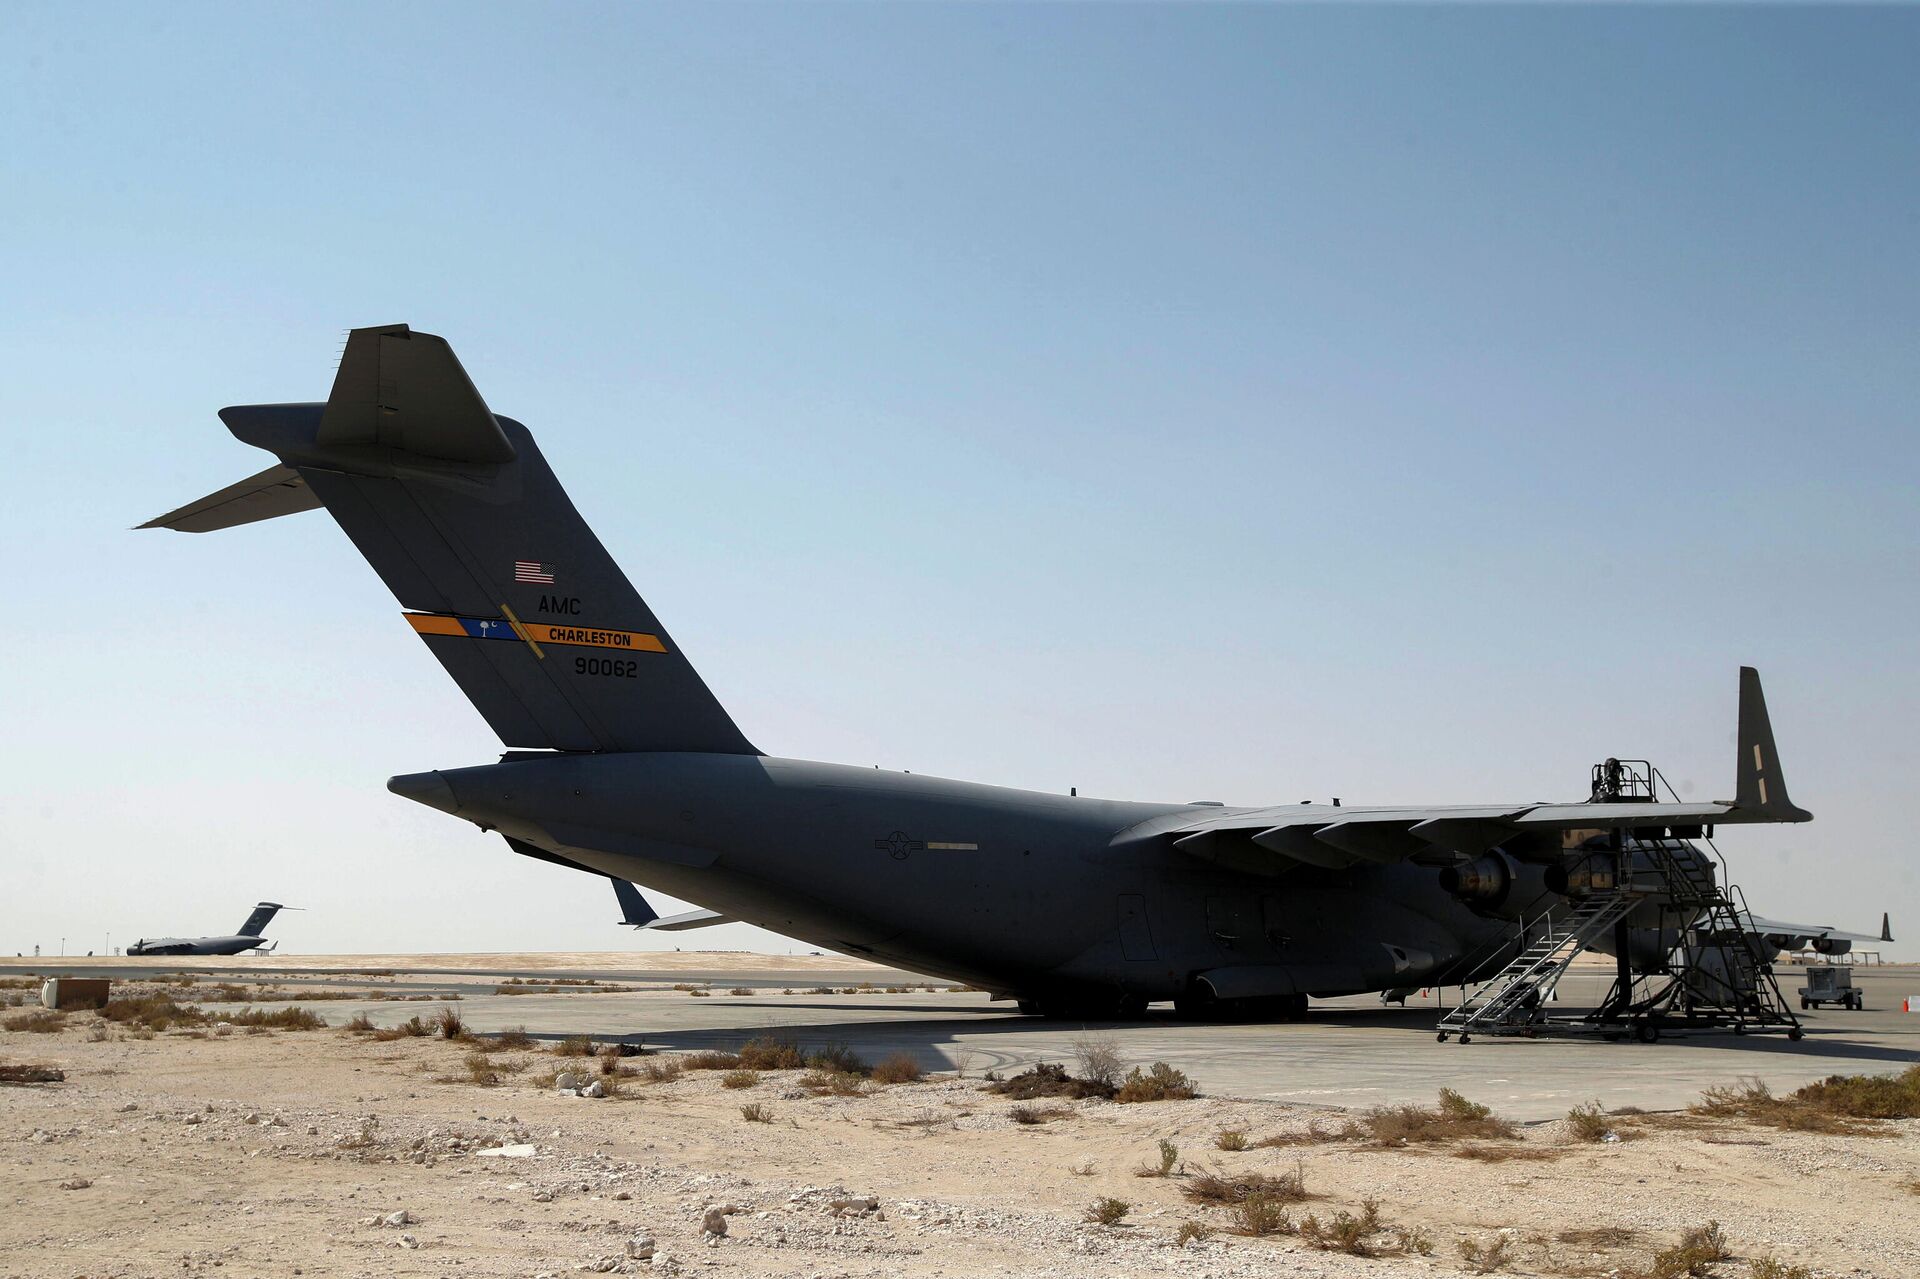 Aviones de la Fuerza Aérea de EEUU, que se utilizaron para evacuar a personas de Afganistán, en la base aérea de Al Udeid en Doha, Catar, el 4 de septiembre de 2021 - Sputnik Mundo, 1920, 04.09.2021